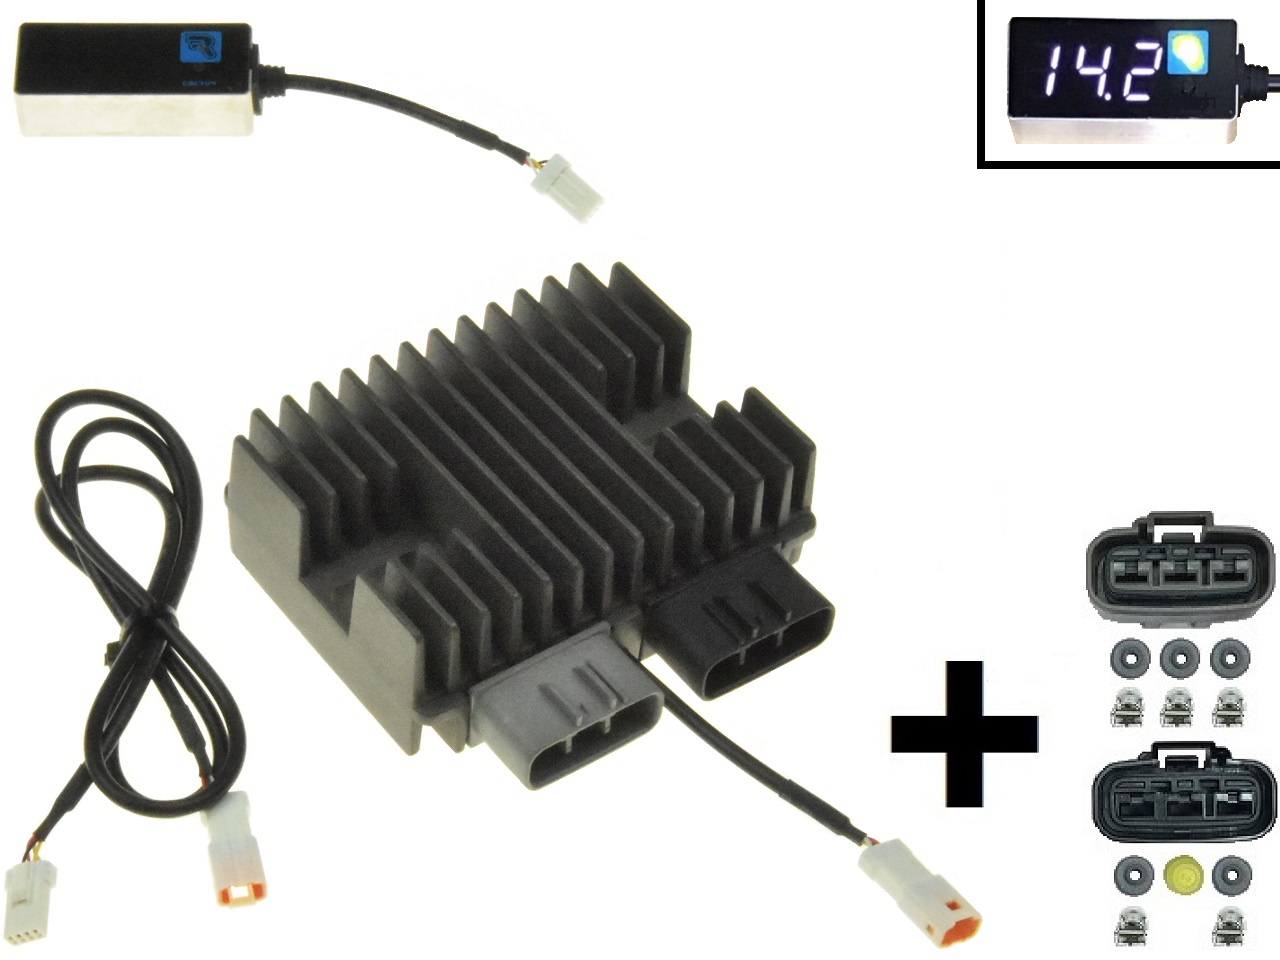 CARR5925-SERIE - MOSFET SERIE SERIES + Raddrizzatore del regolatore di tensione (migliorato SH847) 12V/50A/700W + connettori - Clicca l'immagine per chiudere